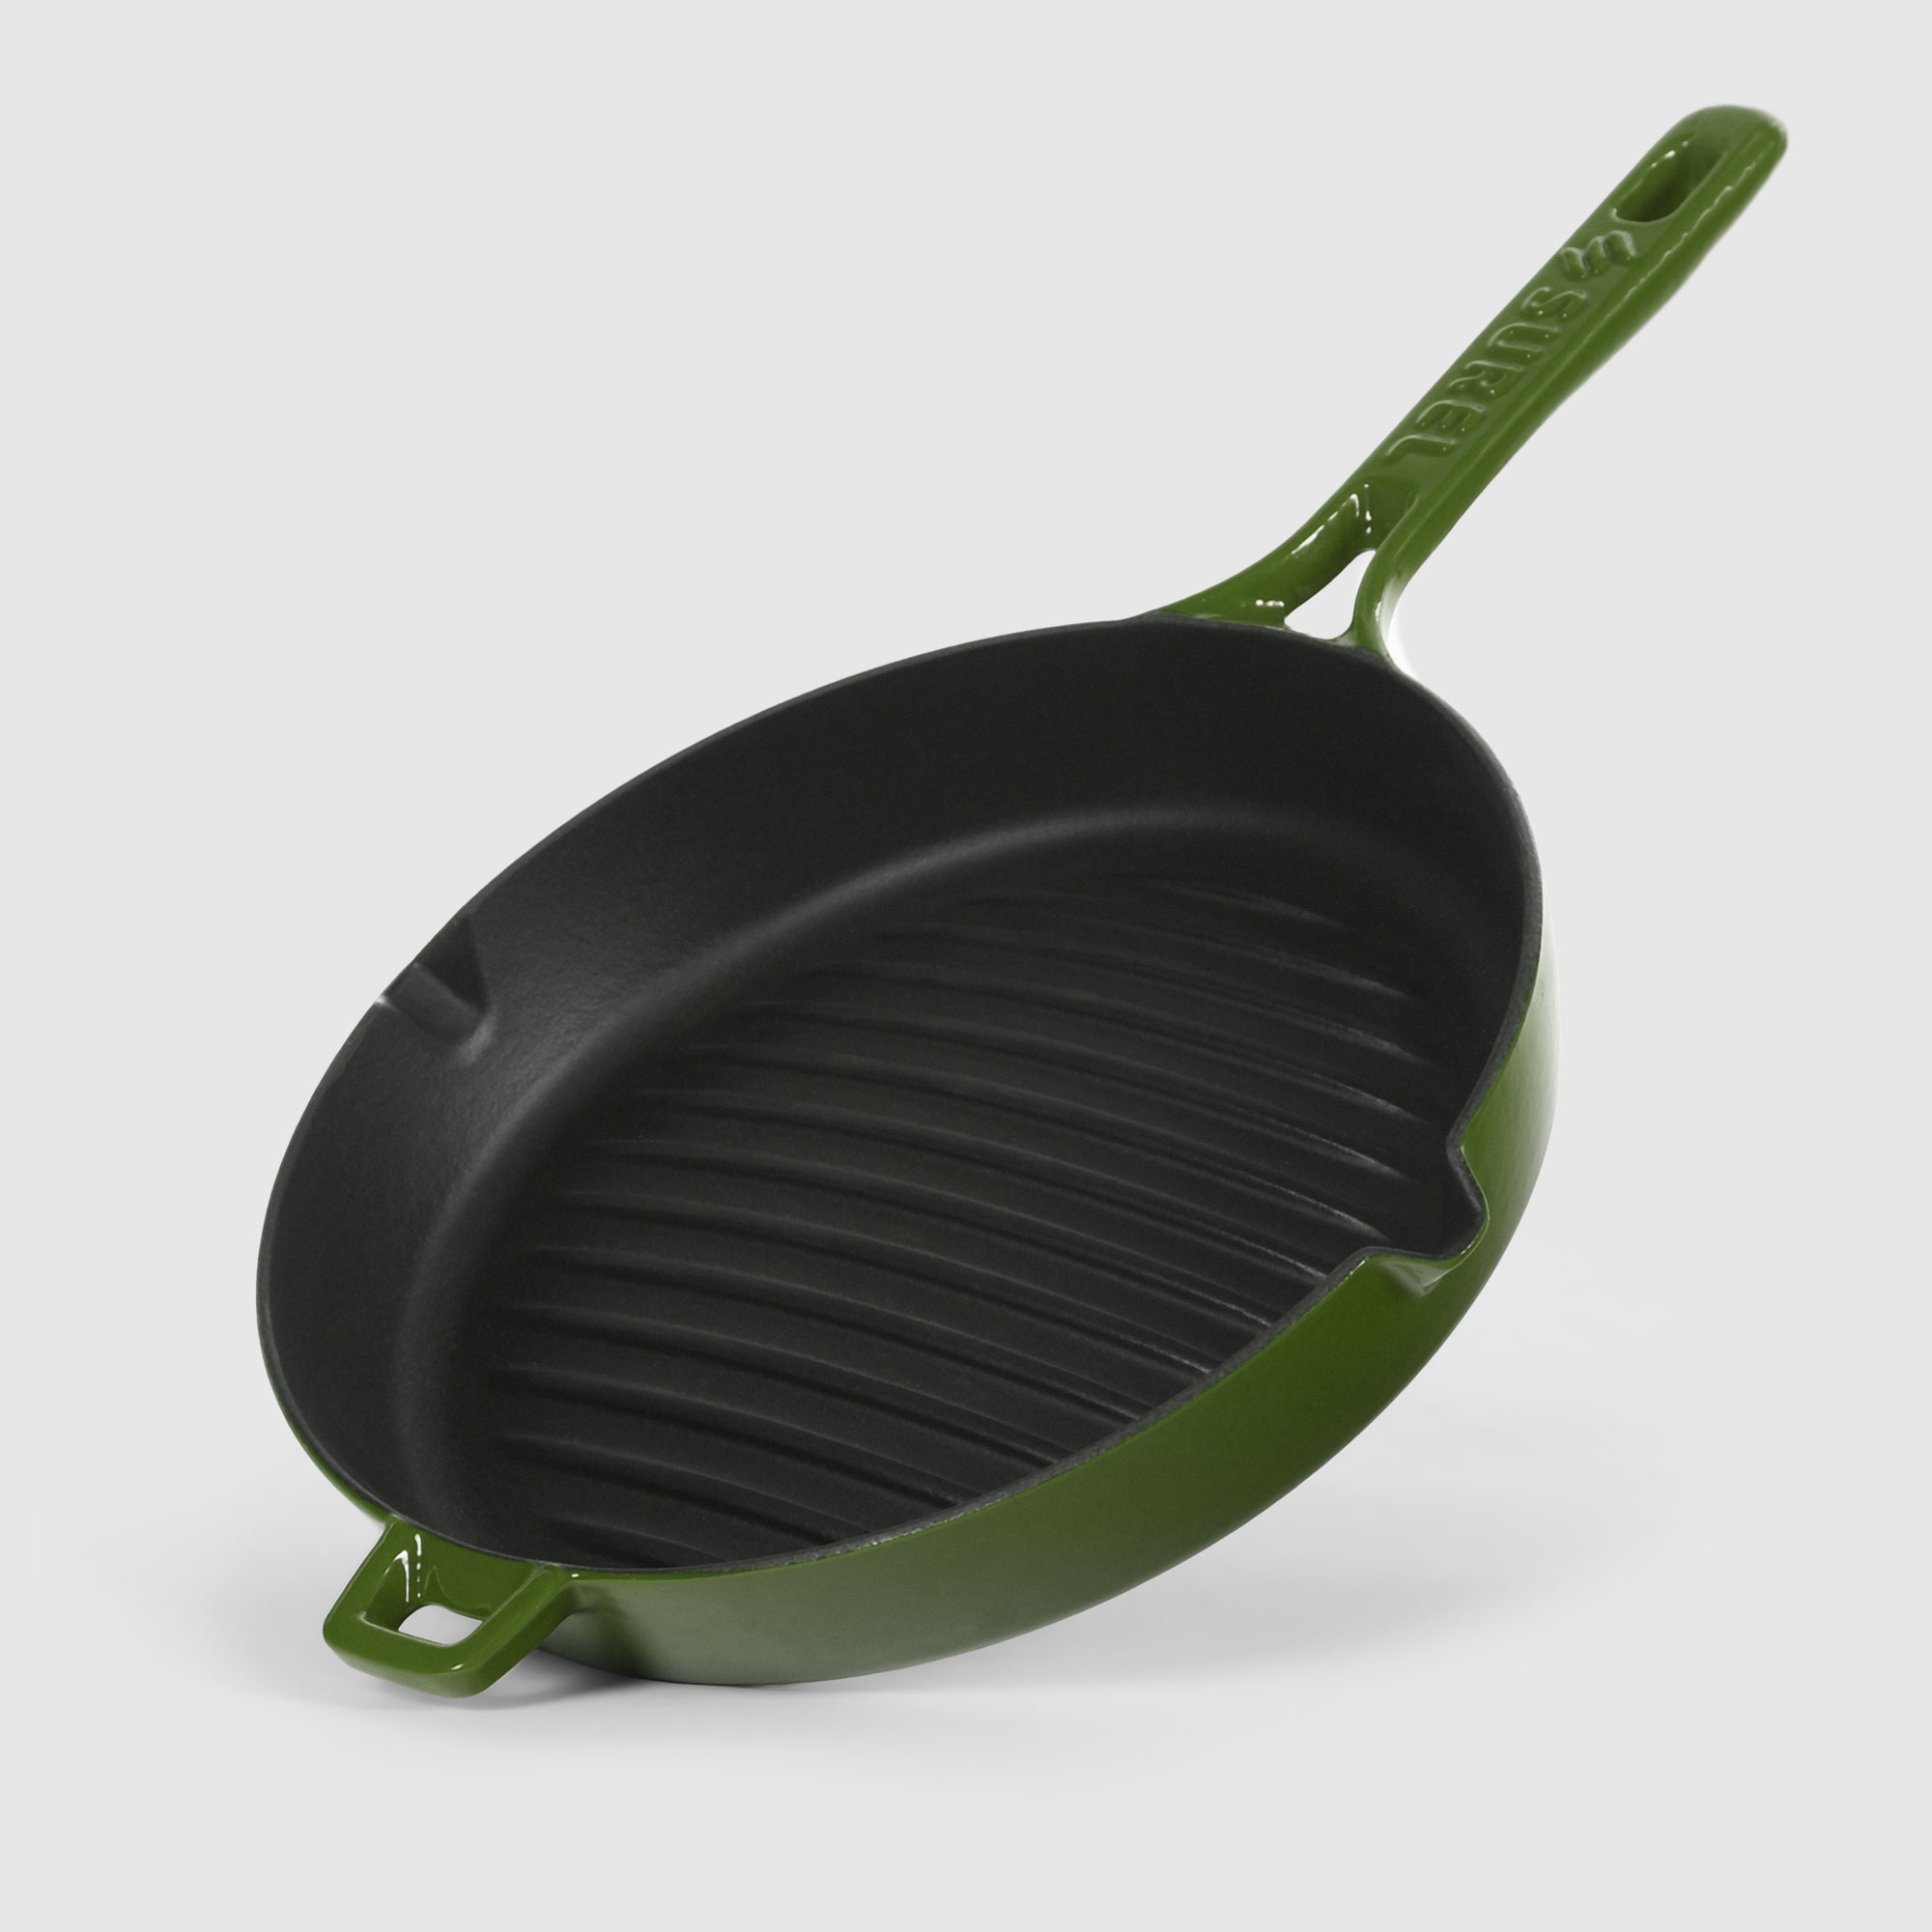 Сковорода-гриль Surel Convex 26 см зеленая сковорода гриль литая 26см съемная ручка доломит